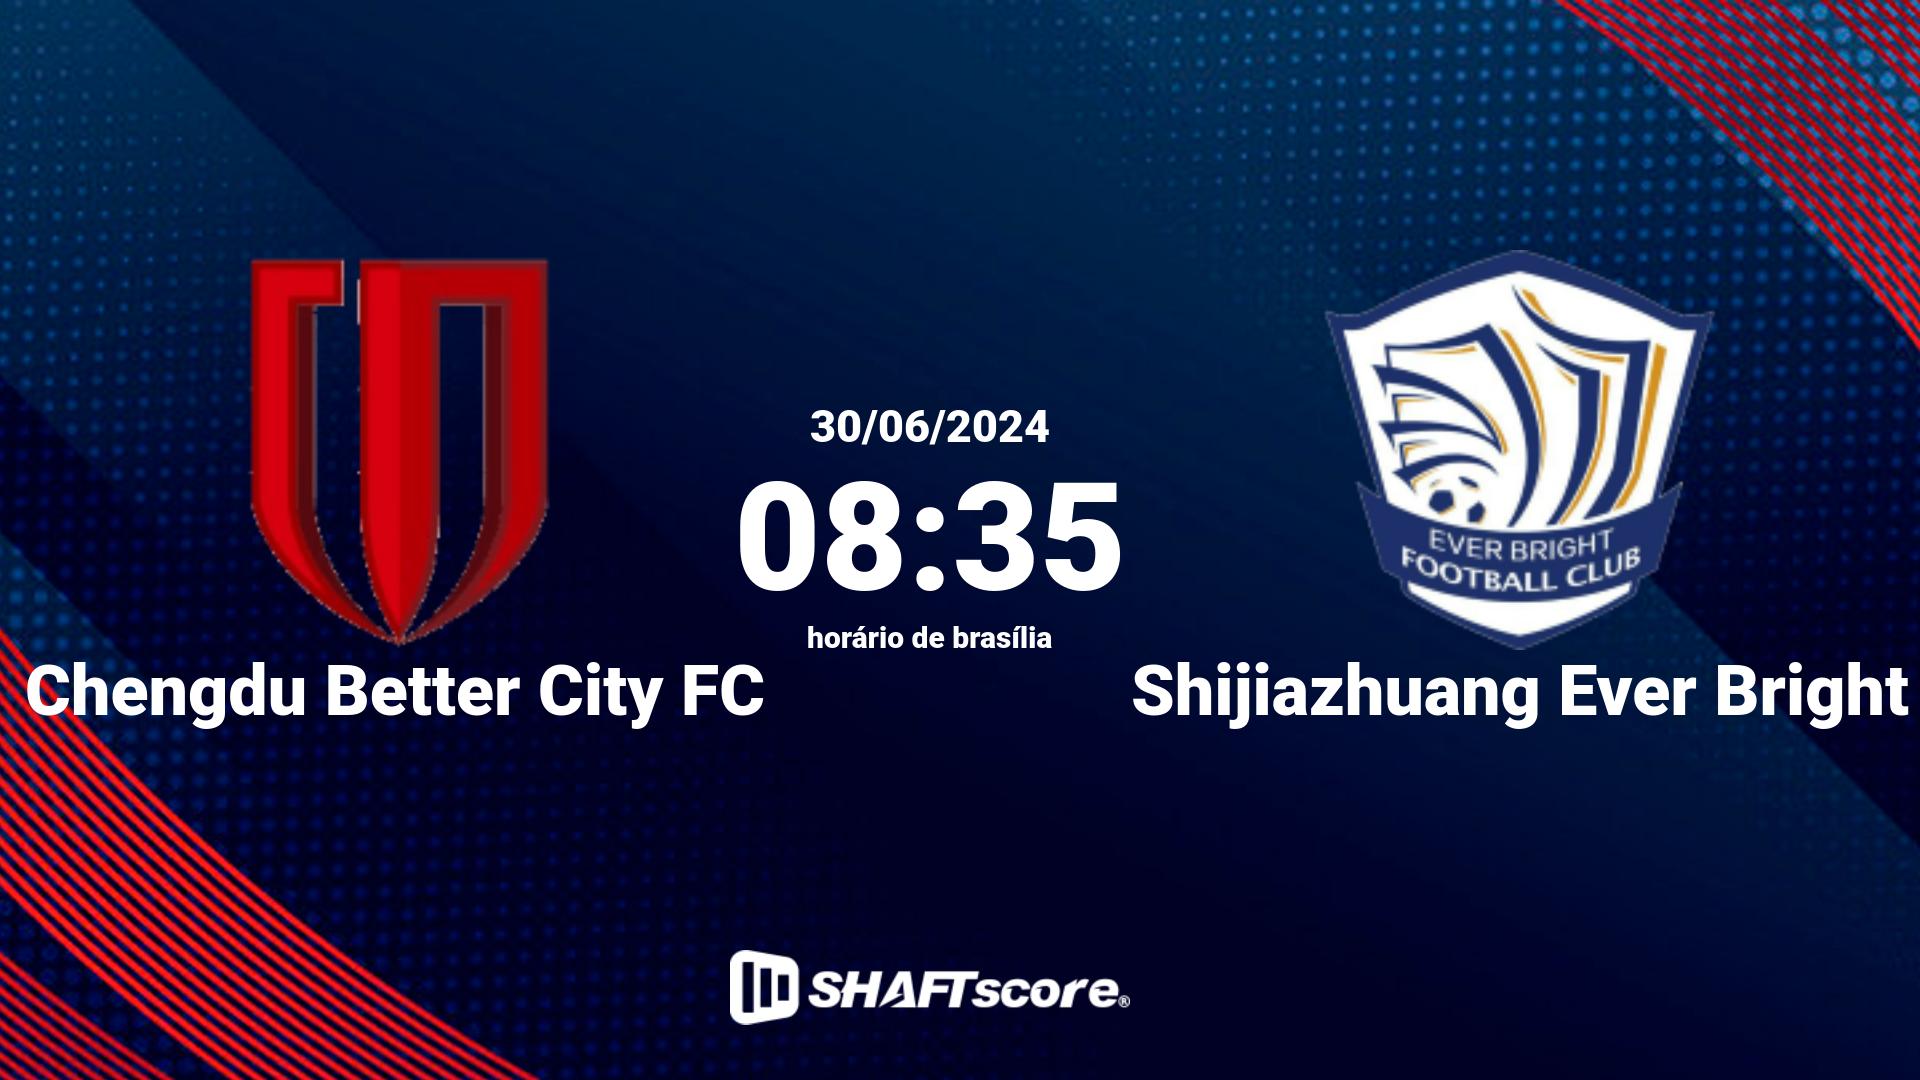 Estatísticas do jogo Chengdu Better City FC vs Shijiazhuang Ever Bright 30.06 08:35